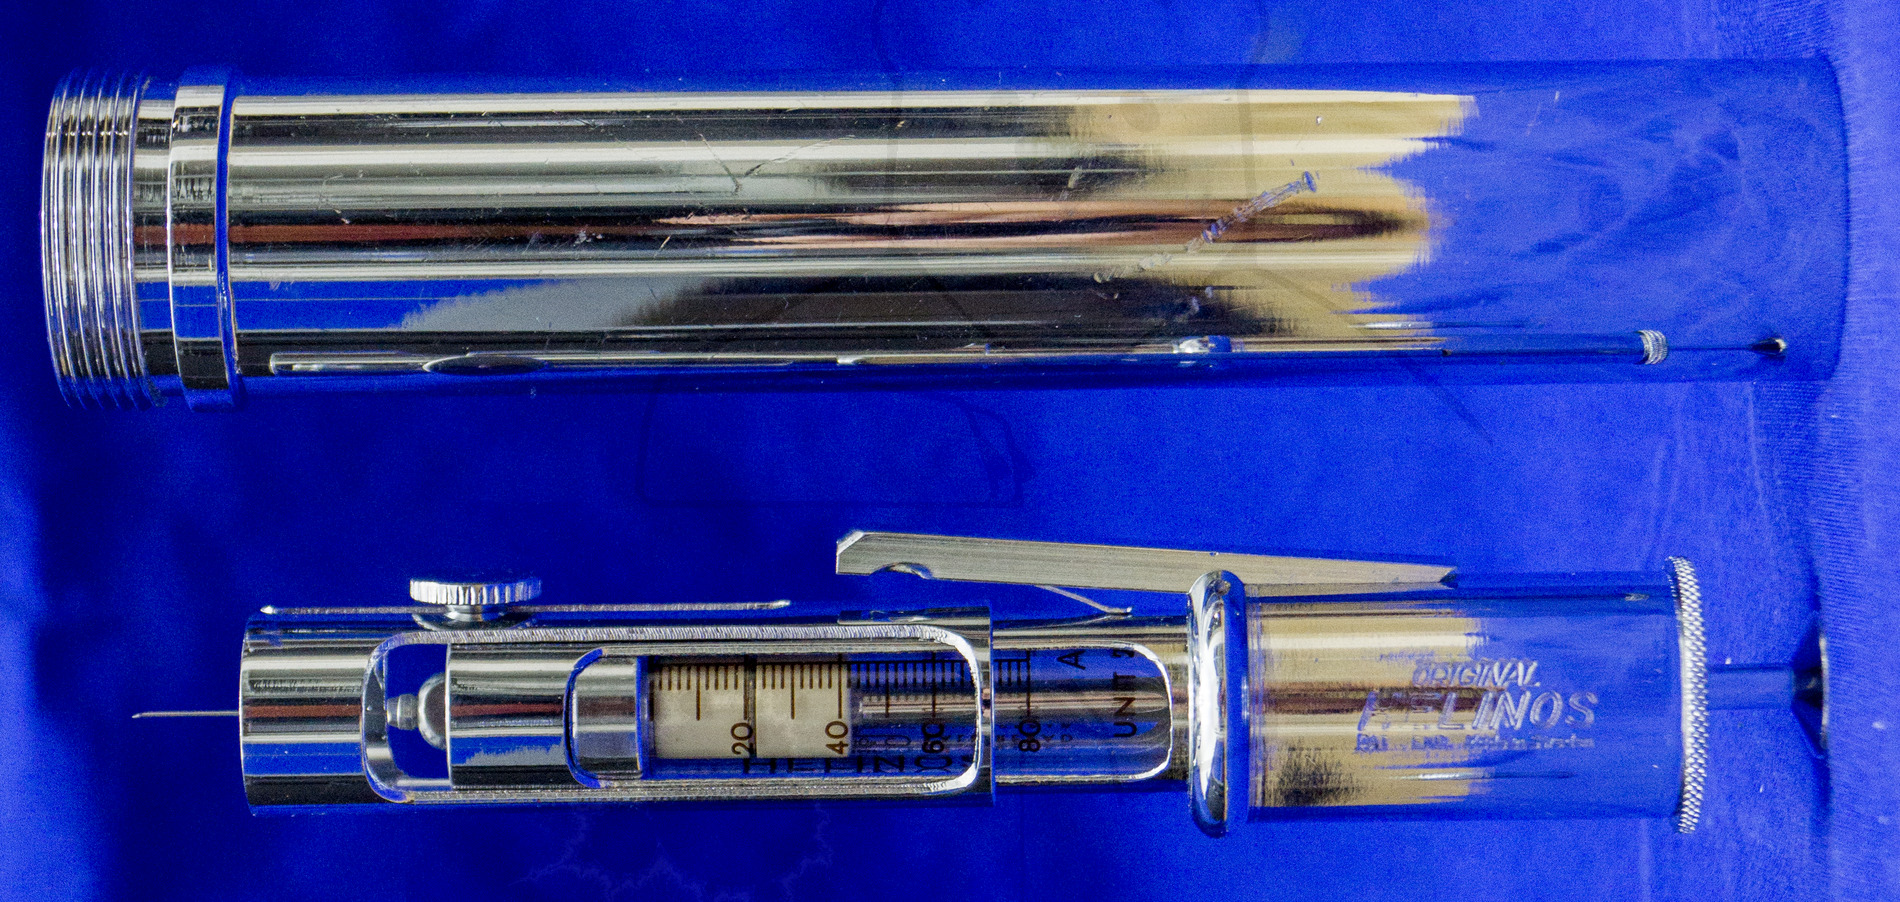 Insulininjektor "Helinos", Mitte der 1950'er Jahre, Injektor und Transportzylinder